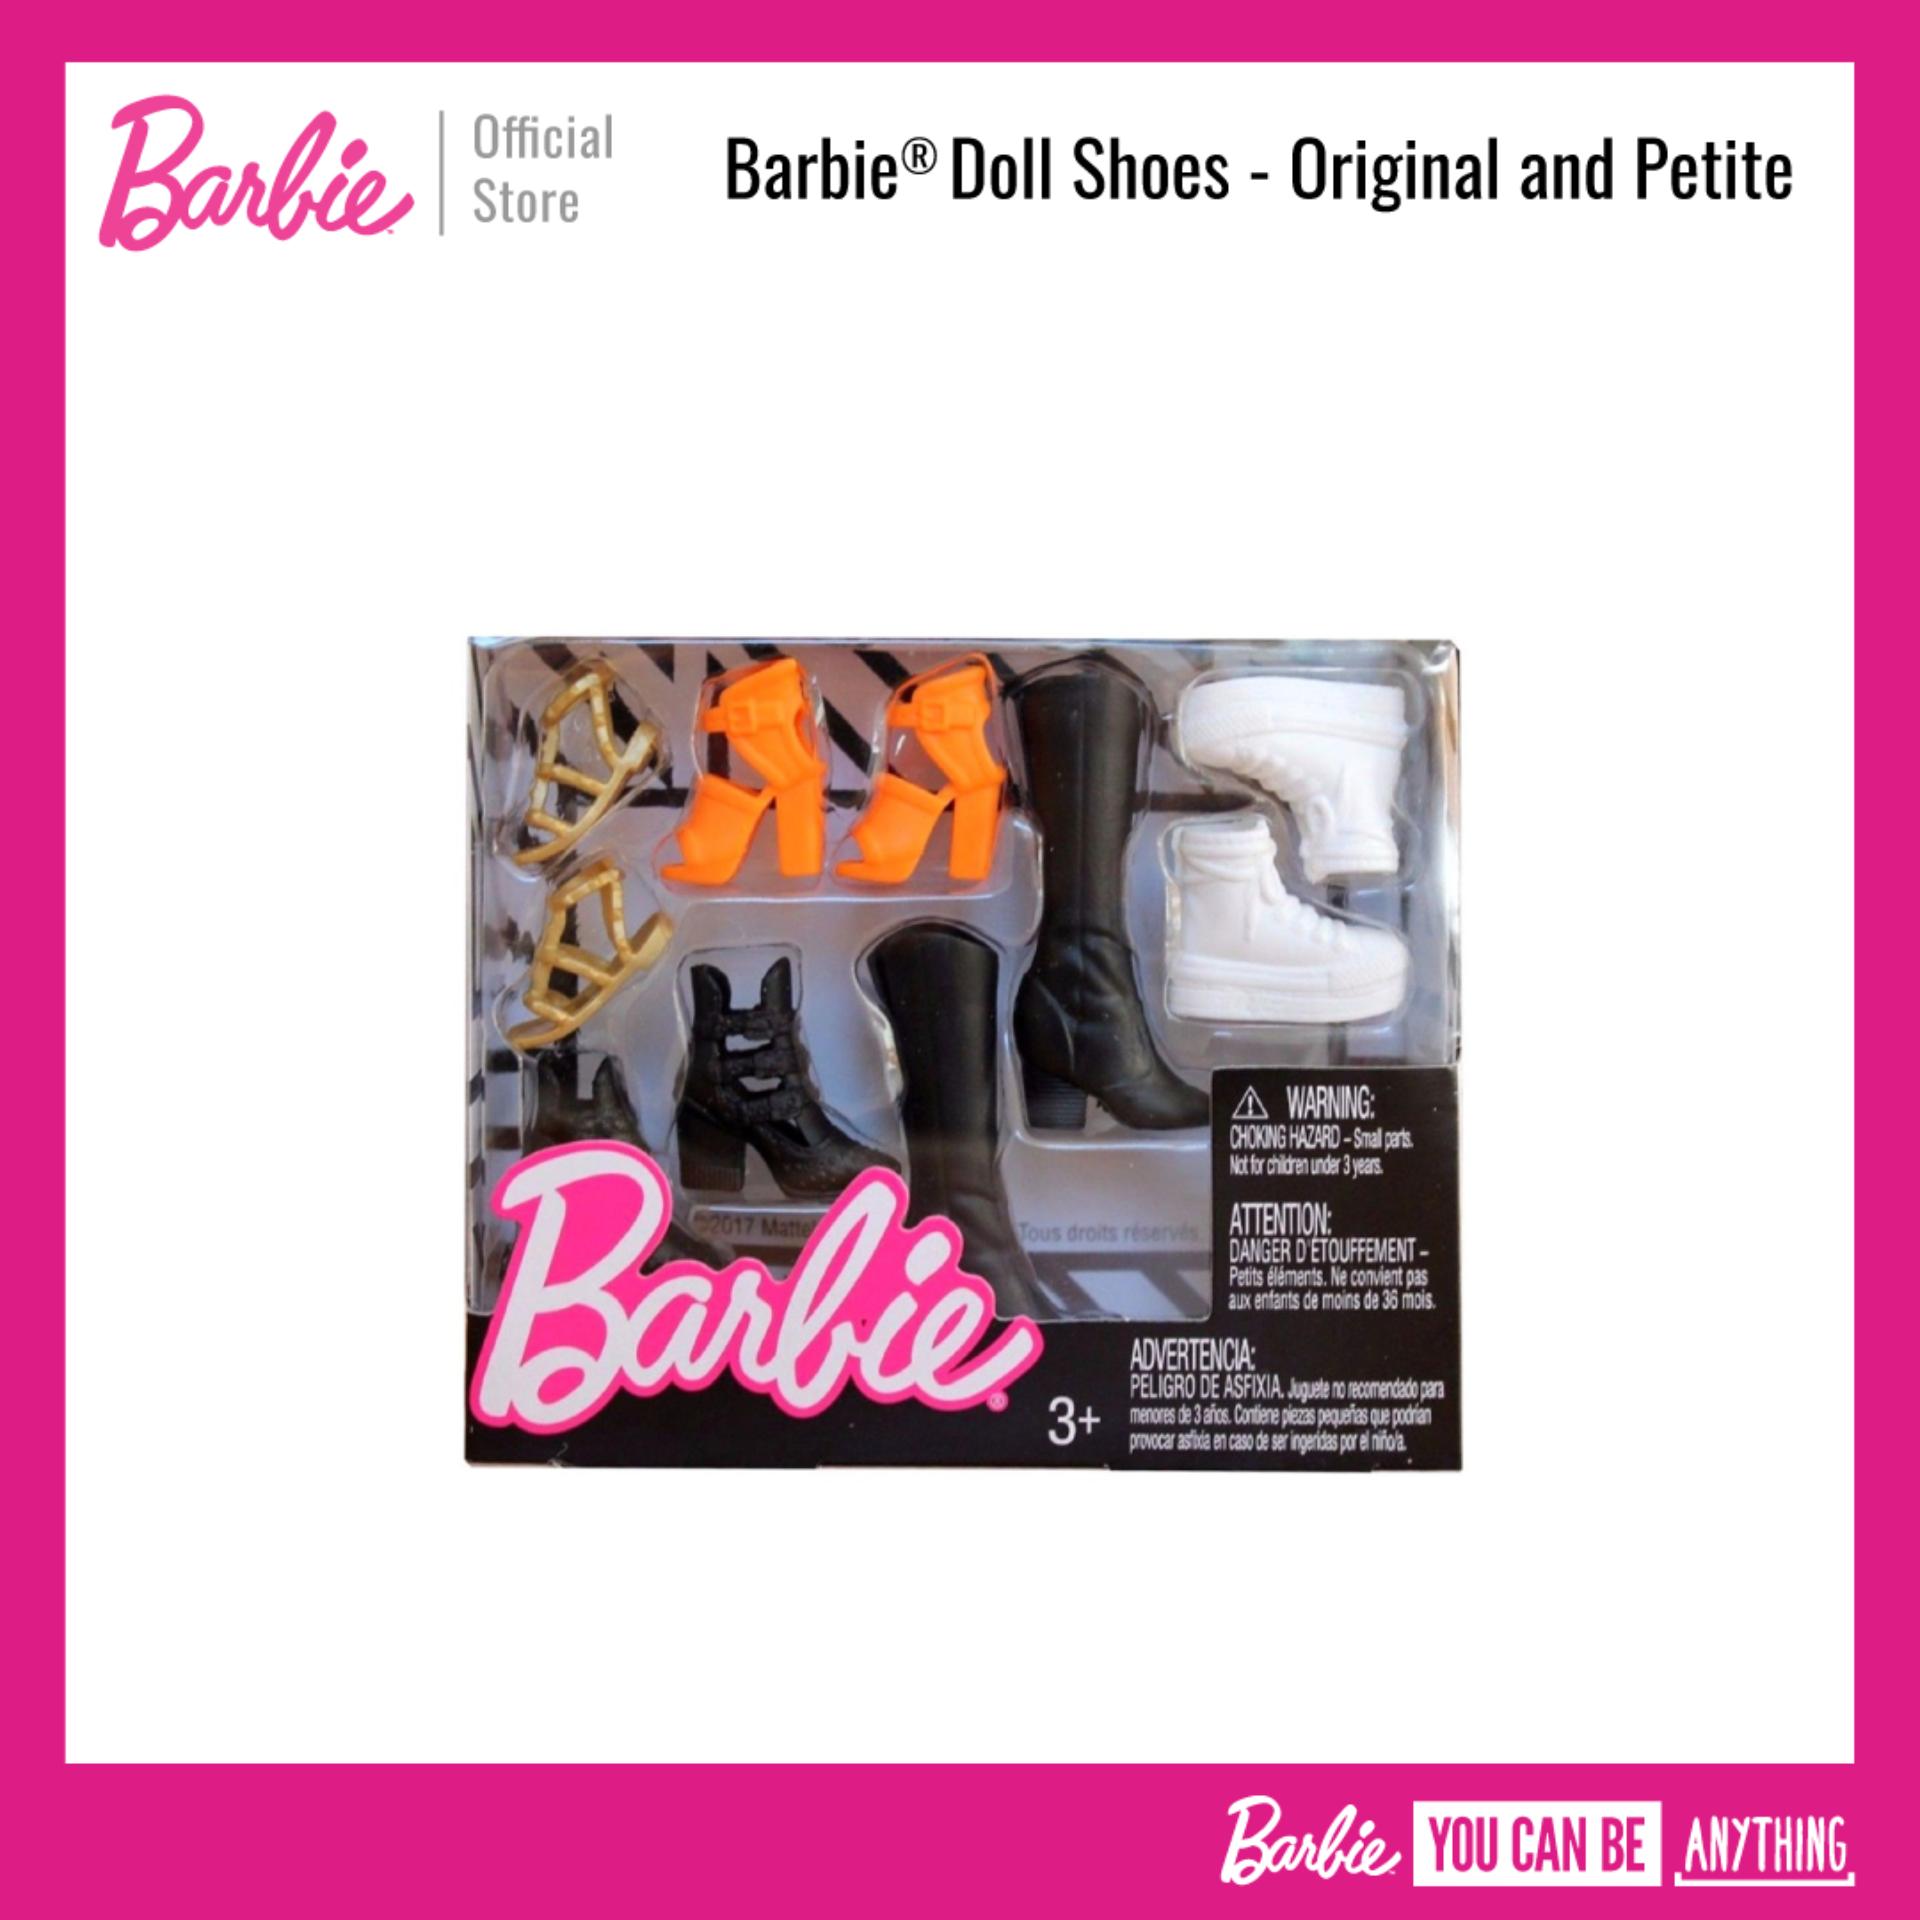 Barbie® Doll Shoes - Original and Petite ตุ๊กตา บาร์บี้ รองเท้า สำหรับรุ่นปกติ สาวร่างเล็ก ของเล่นเด็ก